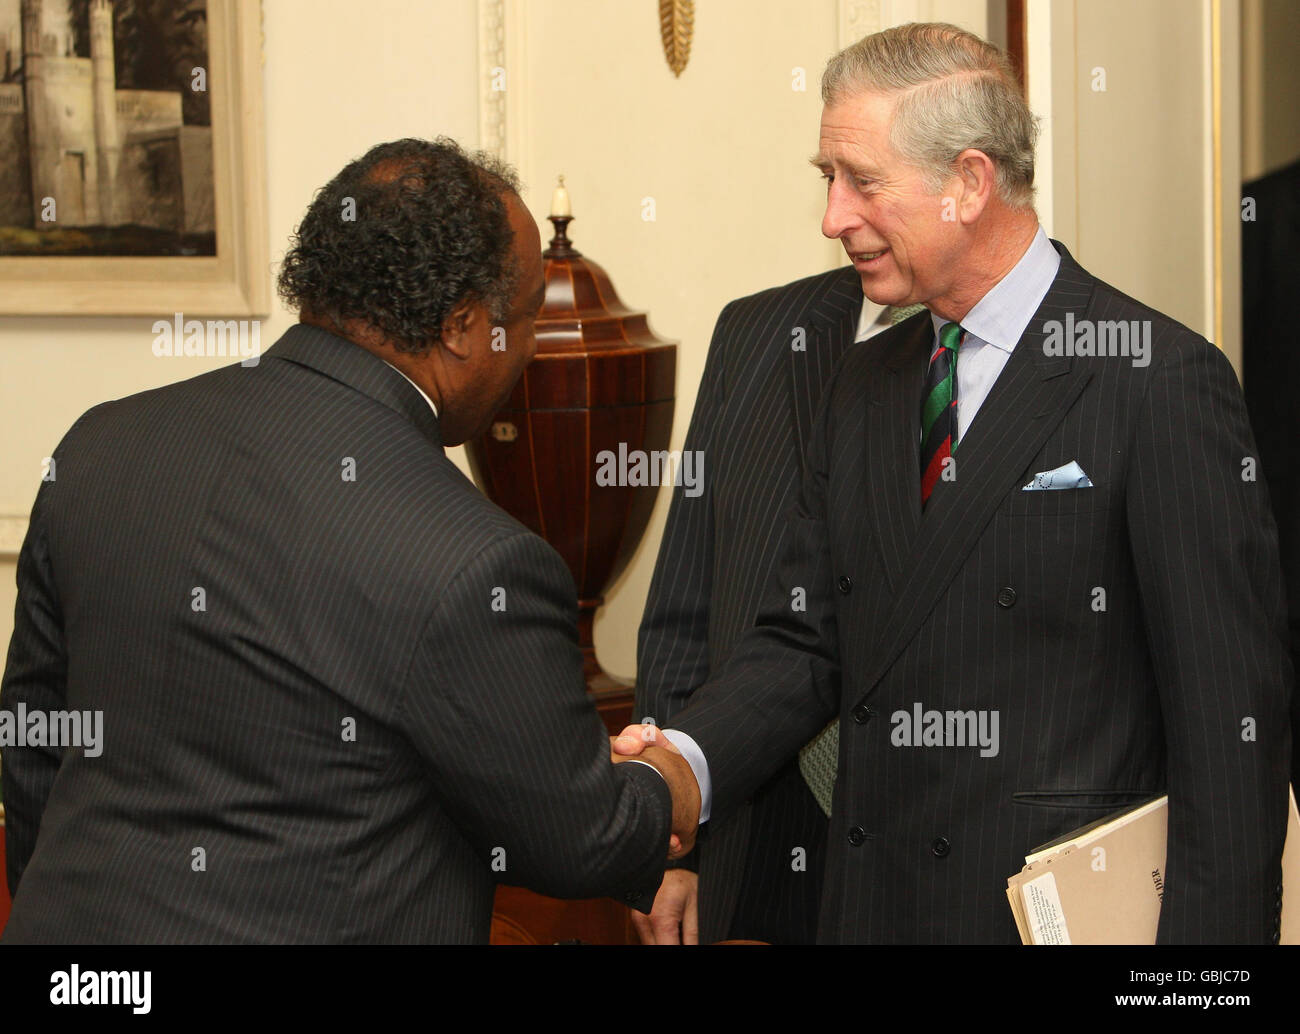 El Príncipe de Gales se reúne con el Ministro Ali Bongo Ondimba, Ministro de Defensa del Gabón, en una reunión de la Junta Consultiva del Grupo de Trabajo Africano en Clarence House, Londres. Foto de stock